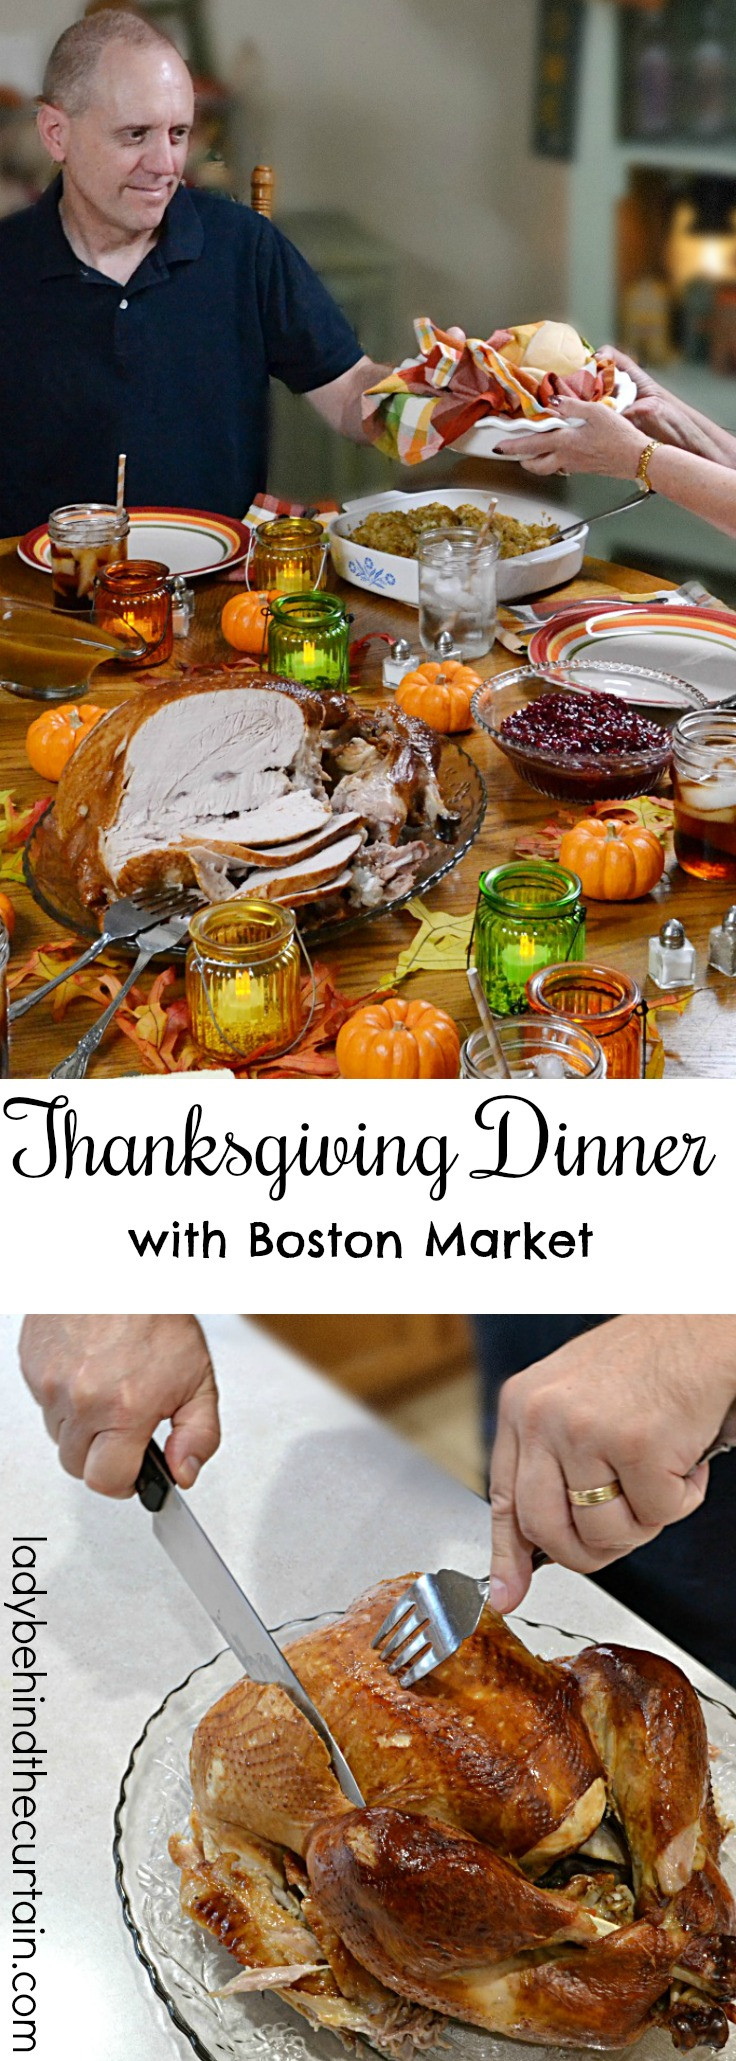 Boston Market Thanksgiving Dinner
 Thanksgiving Dinner with Boston Market